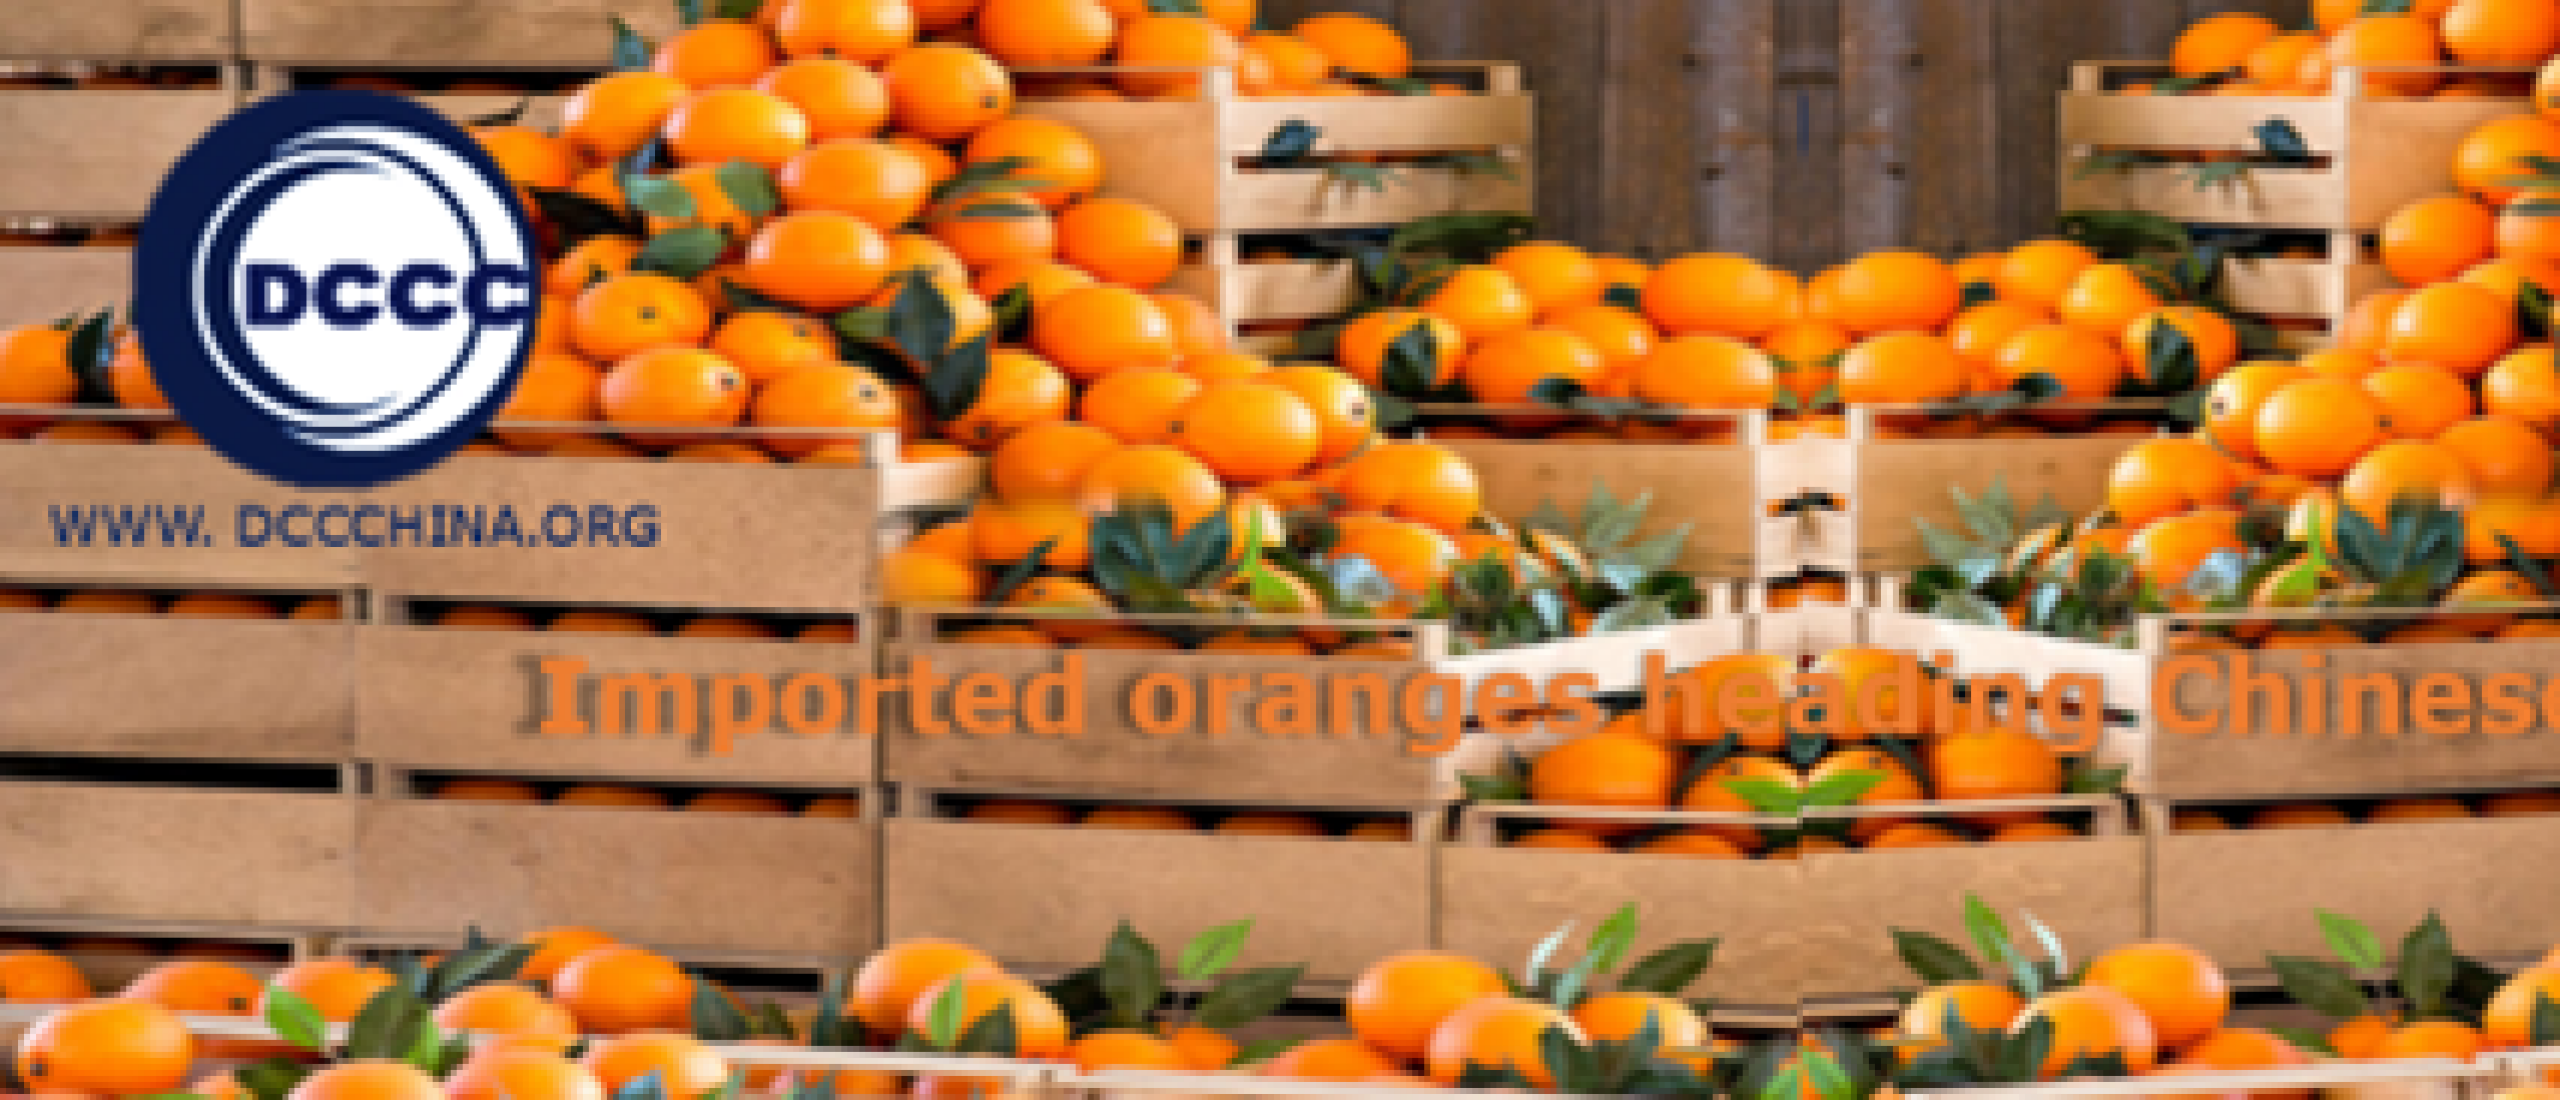 Imported oranges heading Chinese market again - fruit import to China